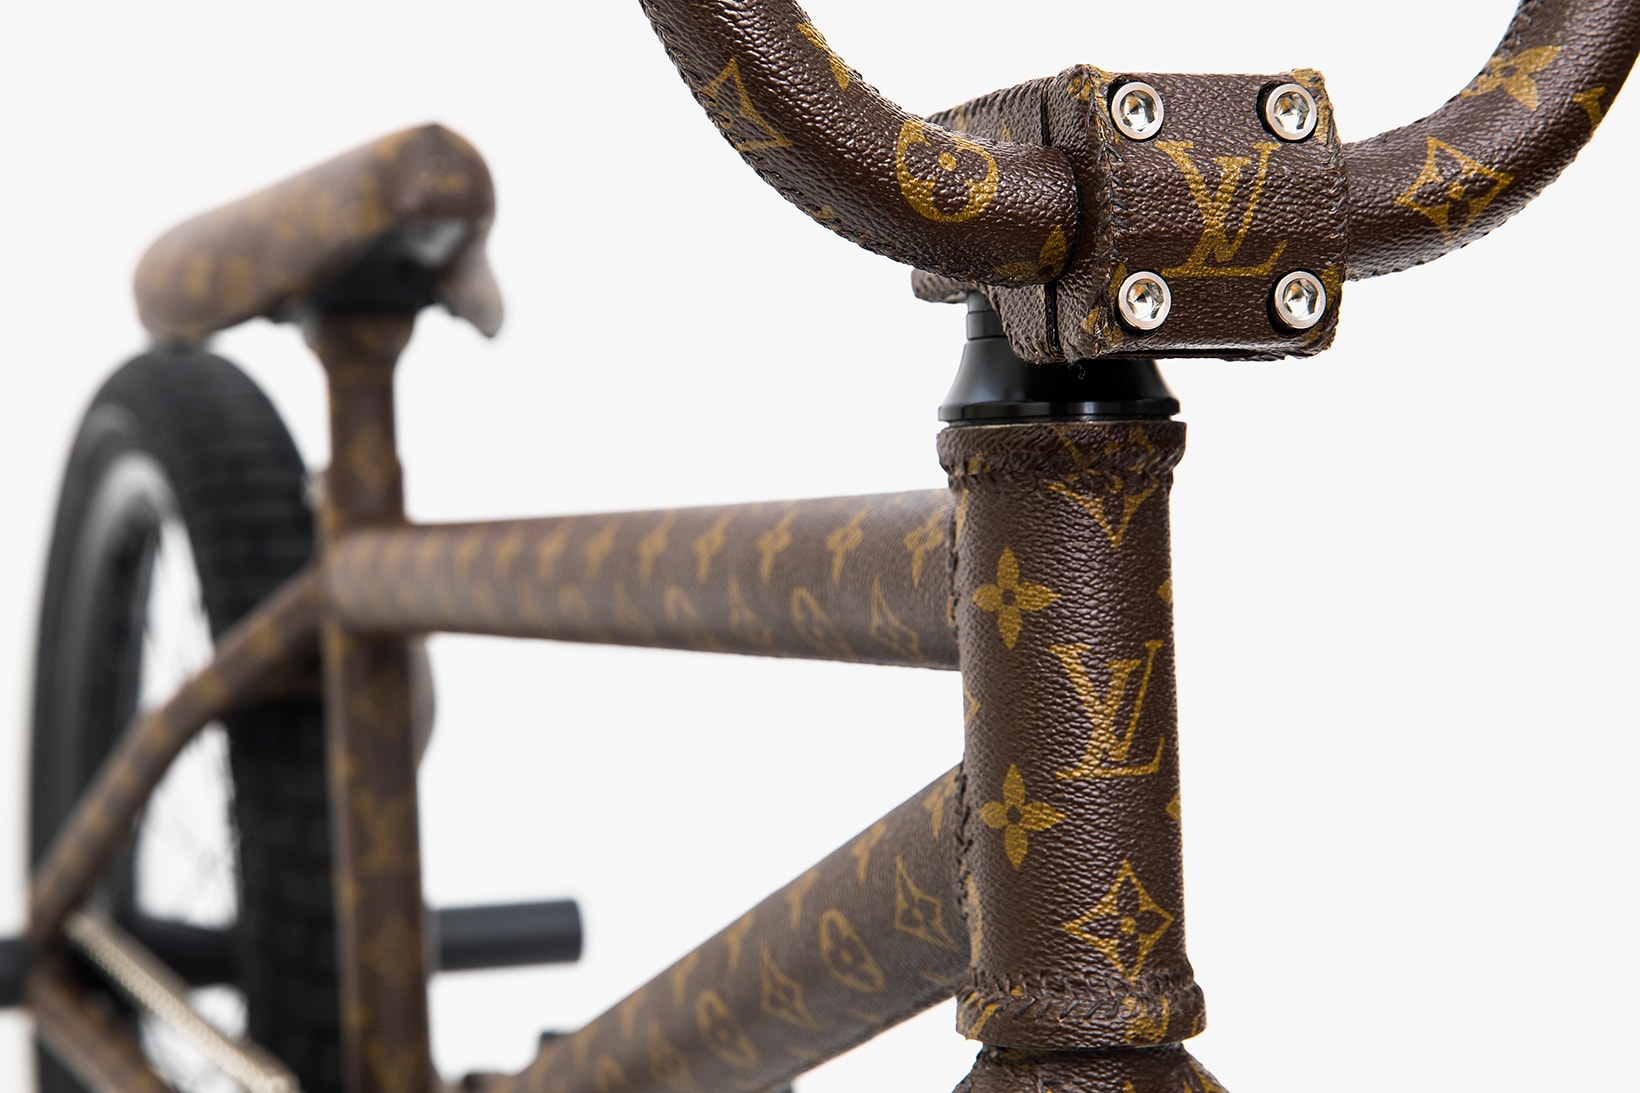 Louis Vuitton Bmx Bike! 